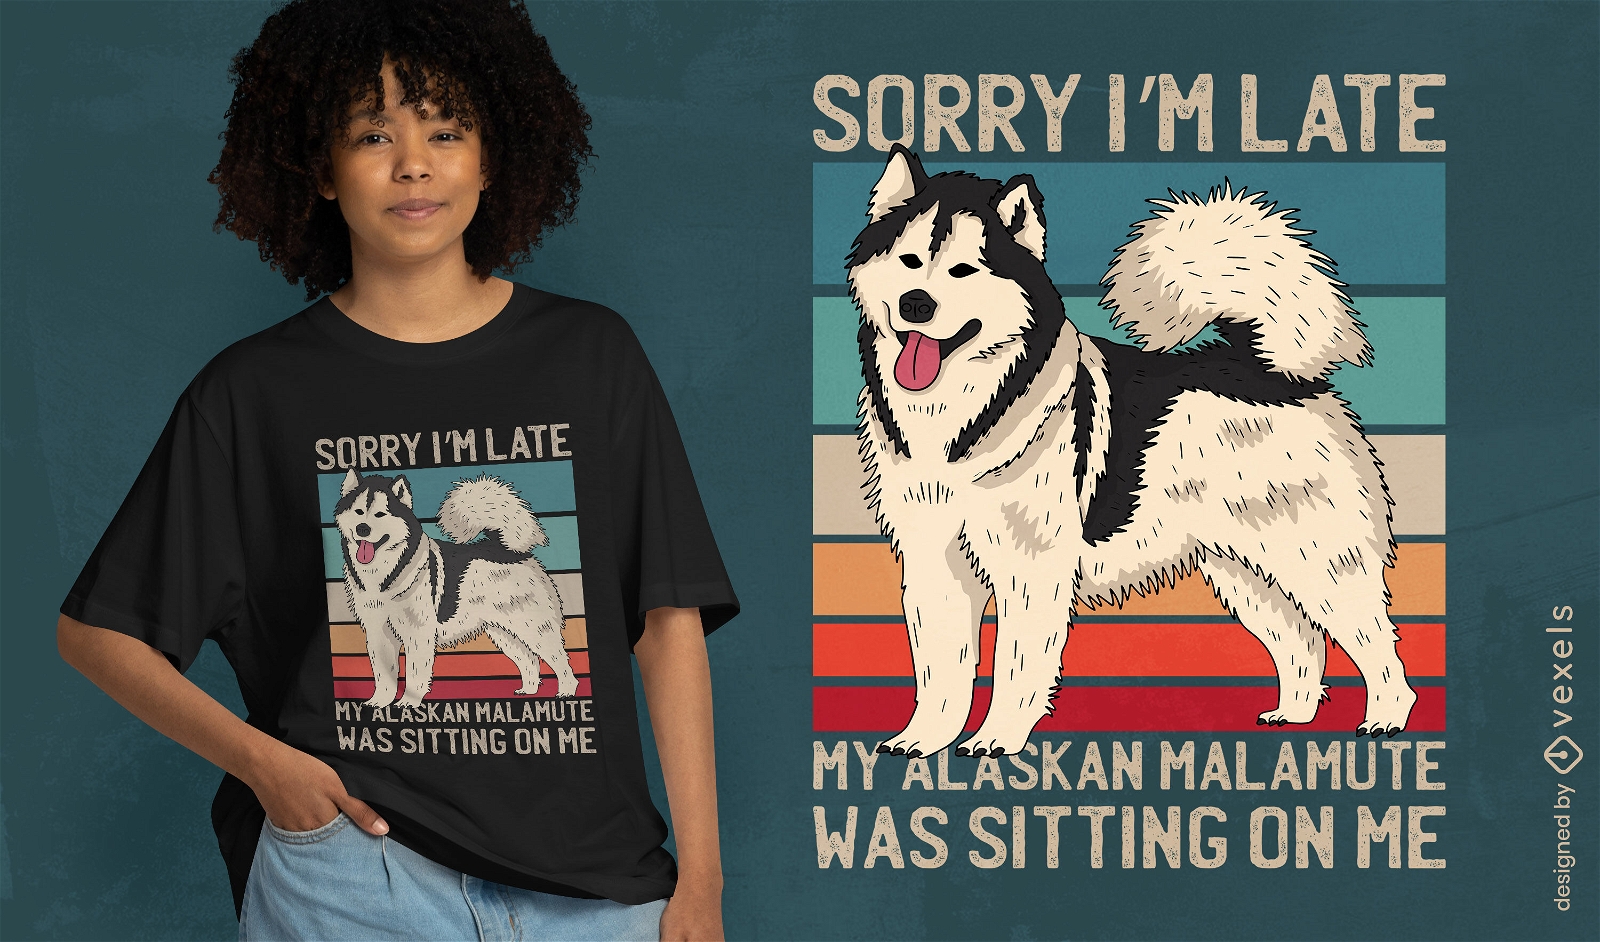 Dise?o divertido de la camiseta de la cita del perro del malamute de Alaska